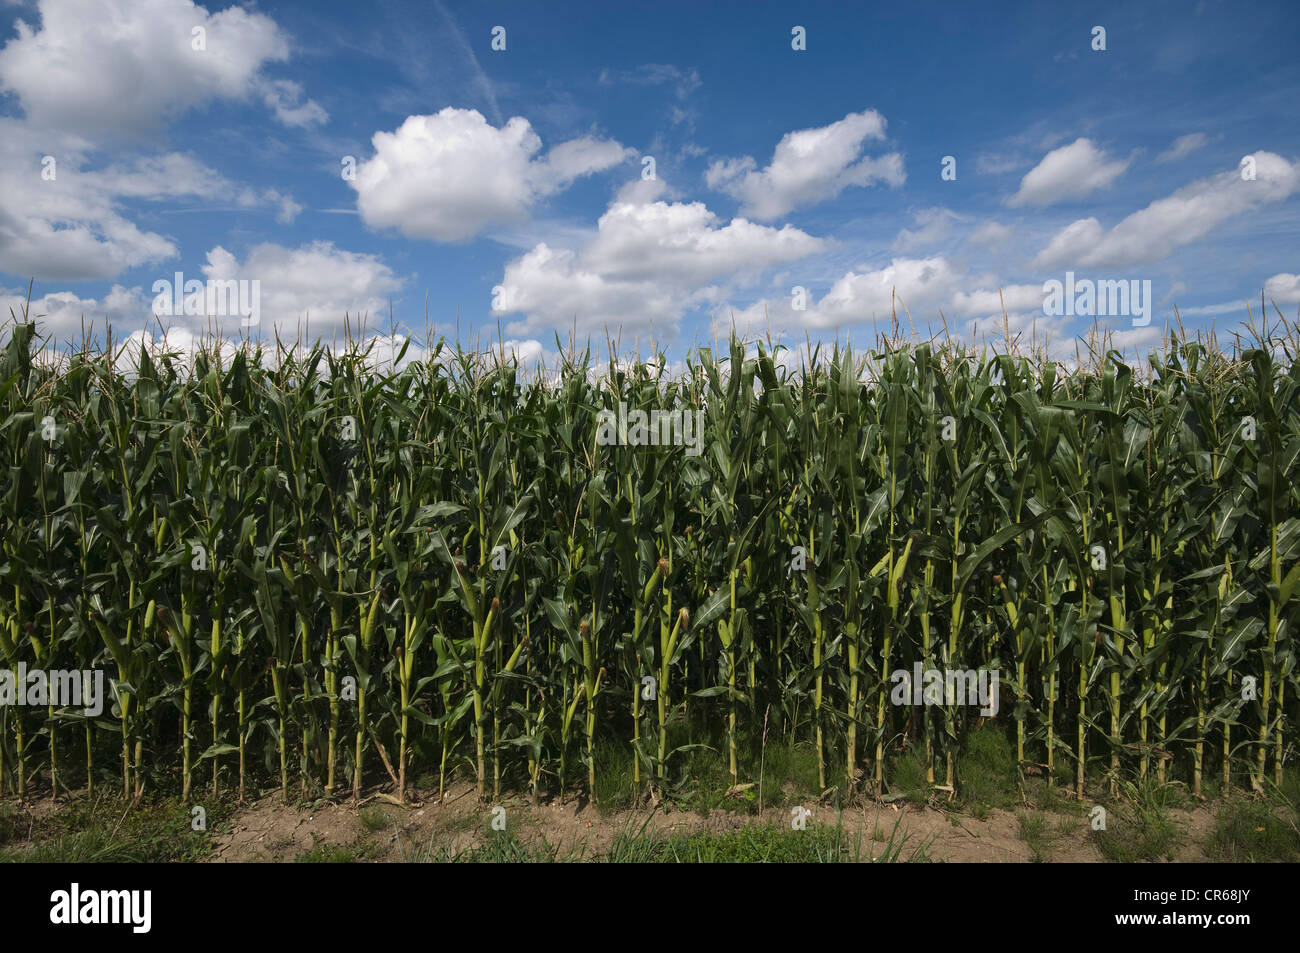 Un champ de maïs, avec les épis sur un champ Banque D'Images